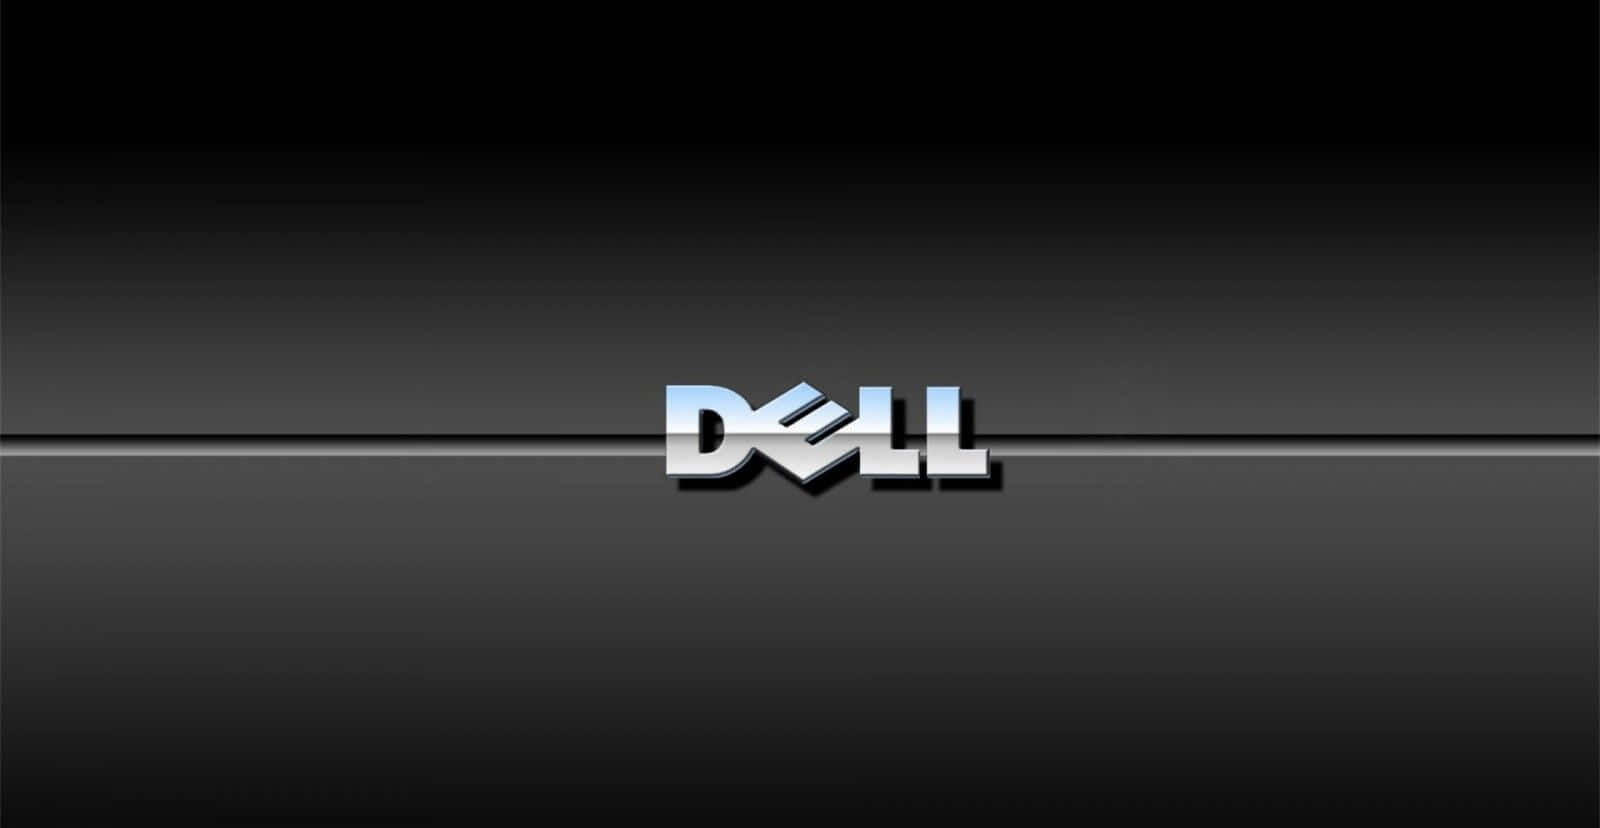 Entfesselnsie Ihre Möglichkeiten Und Maximieren Sie Ihr Geschäftspotenzial Mit Dell Technologie.